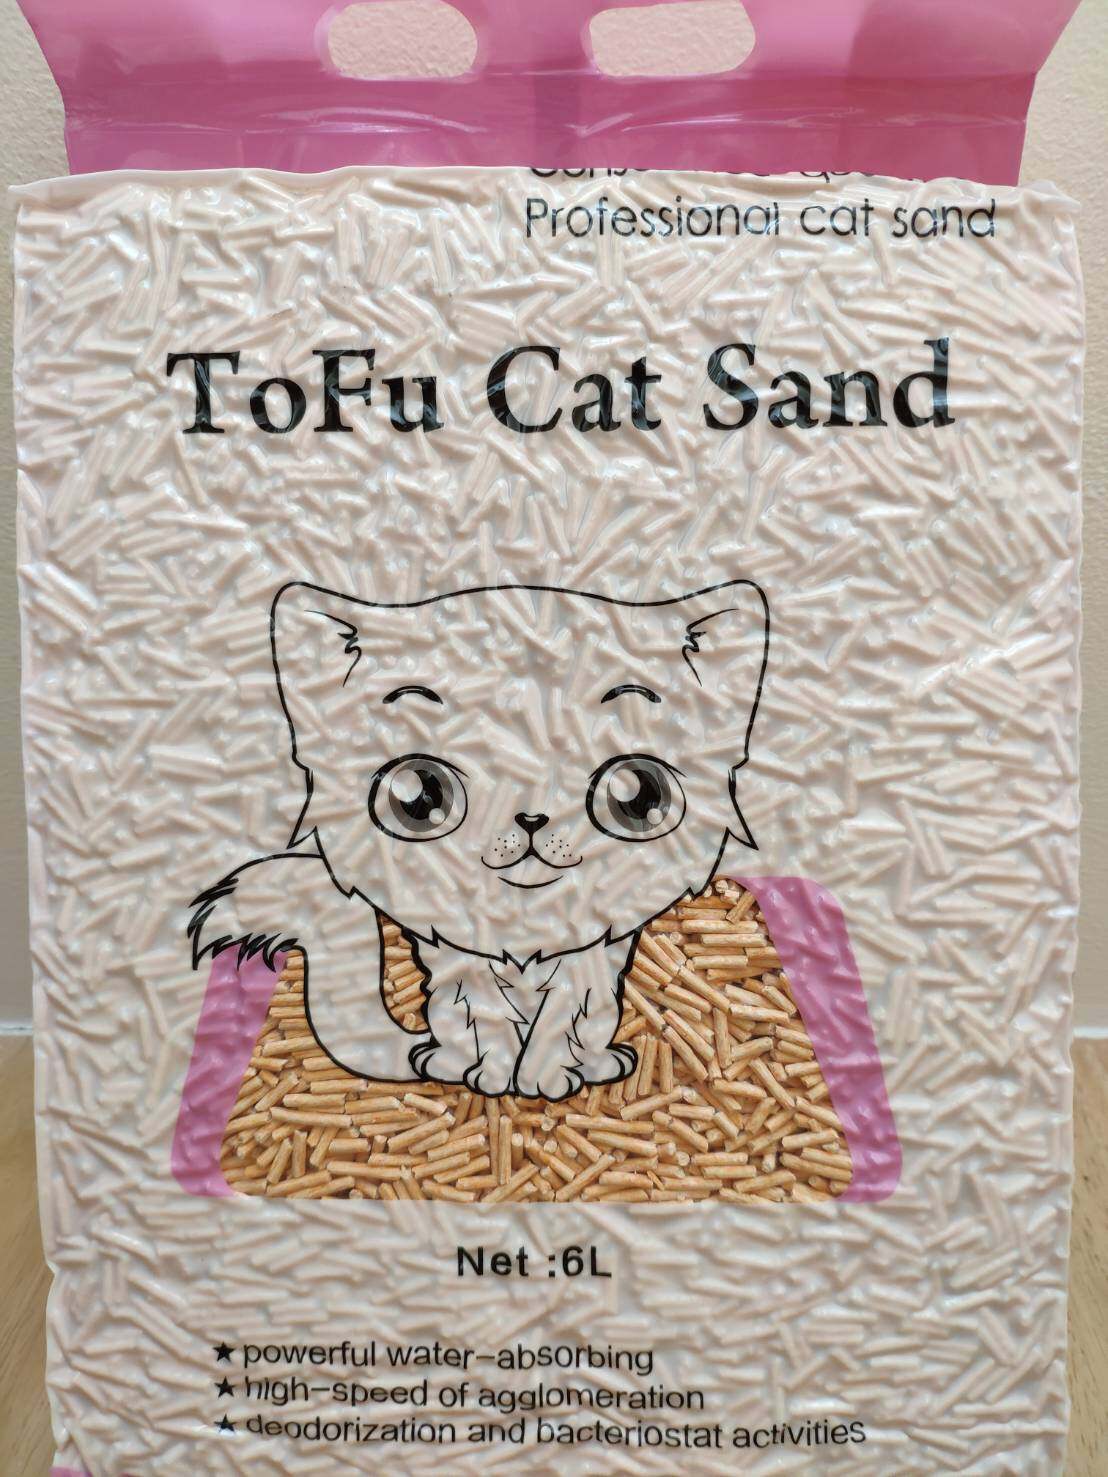 ทรายแมว ทรายเต้าหู้ ทรายอนามัย